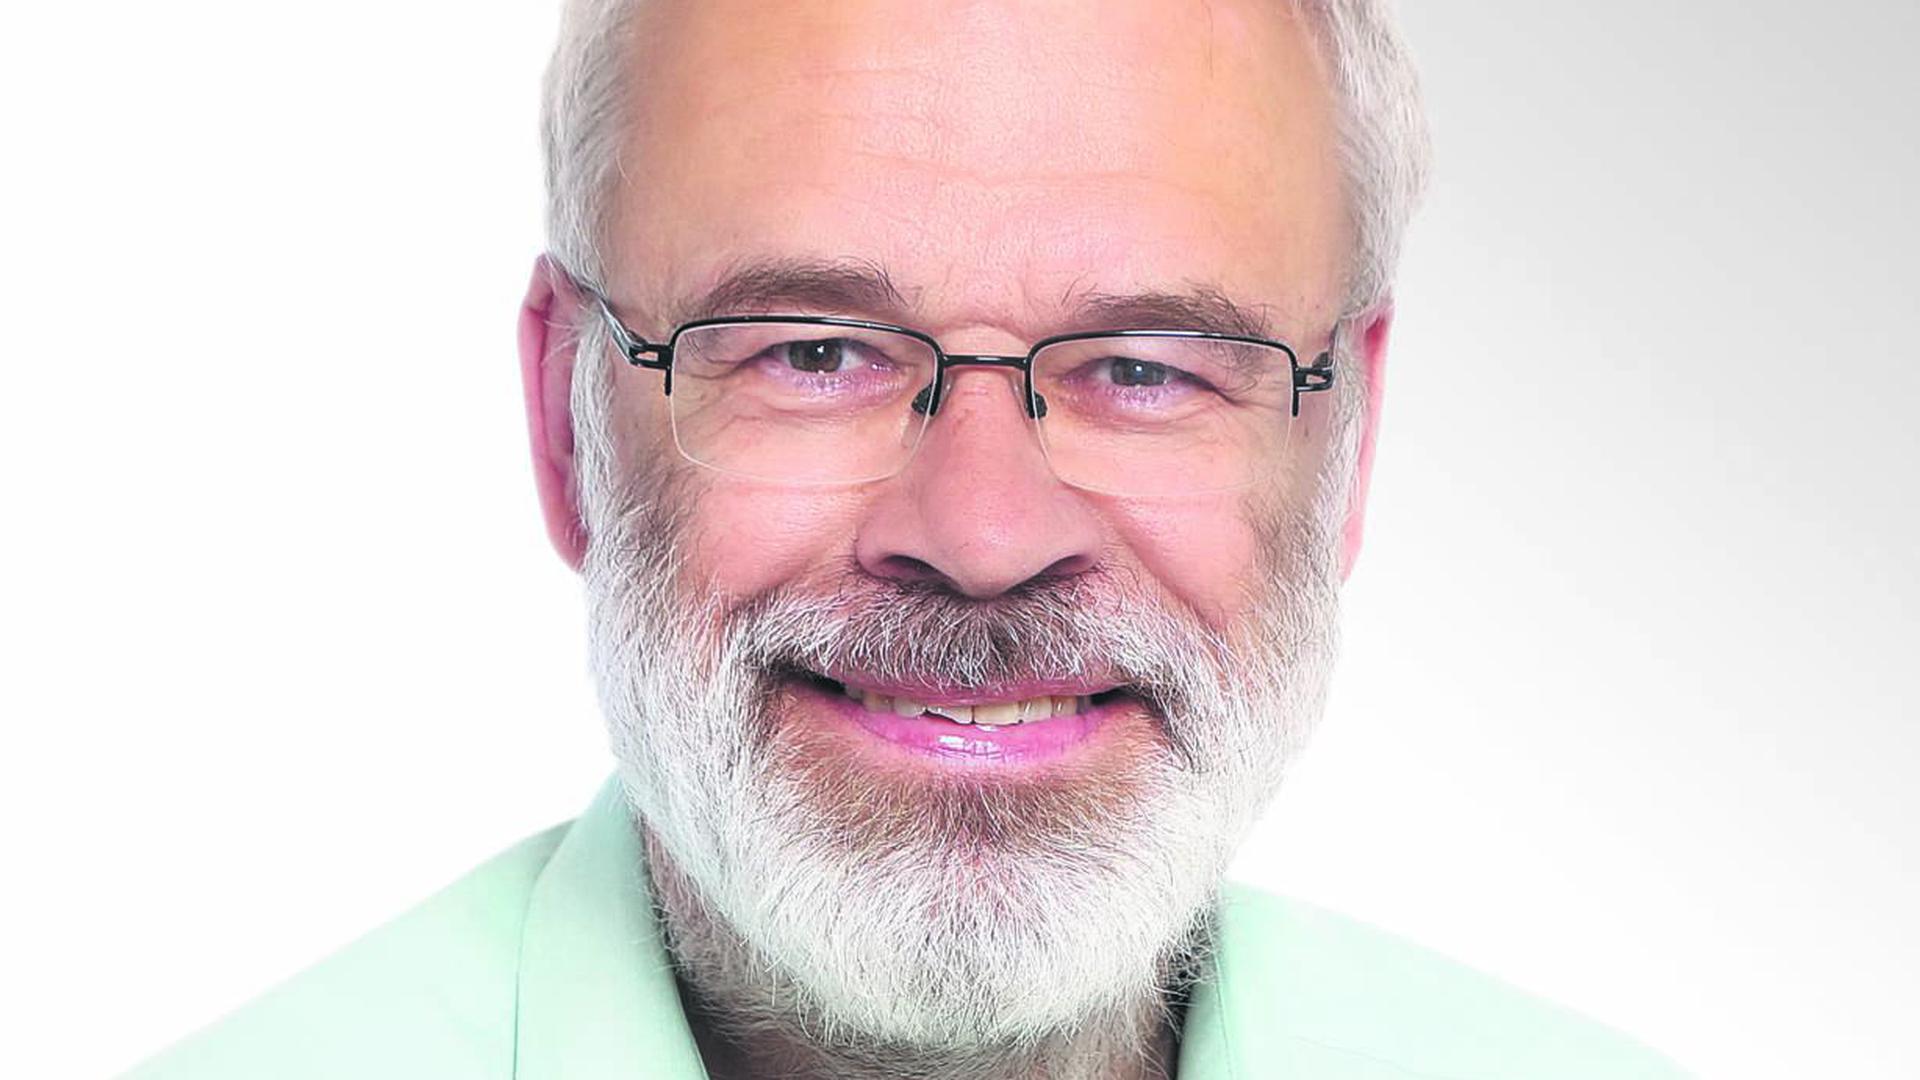 Johannes Honné, Mitglied des Gemeinderat Karlsruhes, Grünen-Fraktion, Stadtrat seit 2009, stellvertretender Fraktionssprecher, spezielles Zuständigkeitsgebiet Radverkehr, Software-Entwickler, wohnt in der Südweststadt